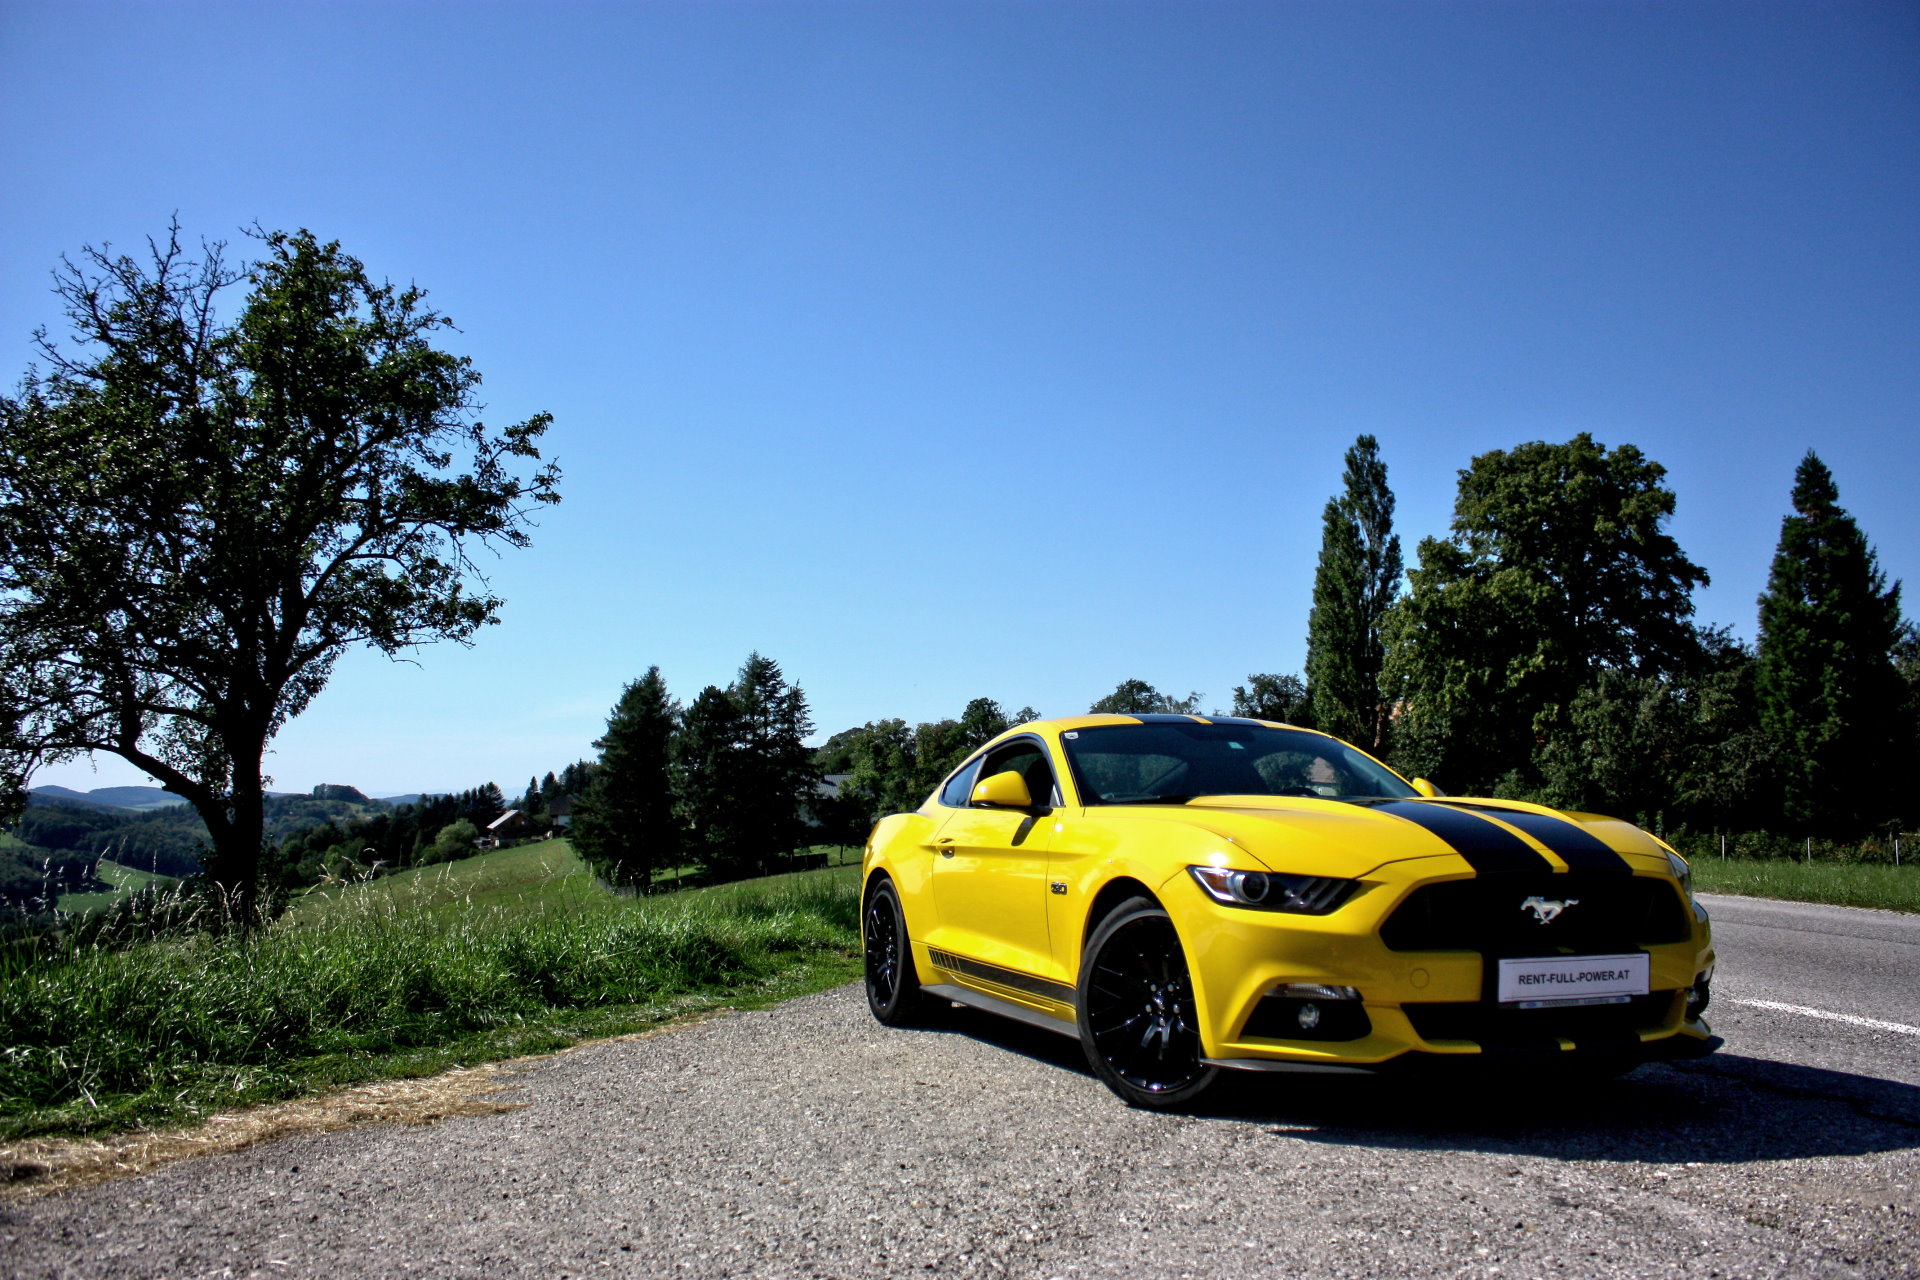 Ford Mustang GT 5.0 in der Nähe von Wien mieten